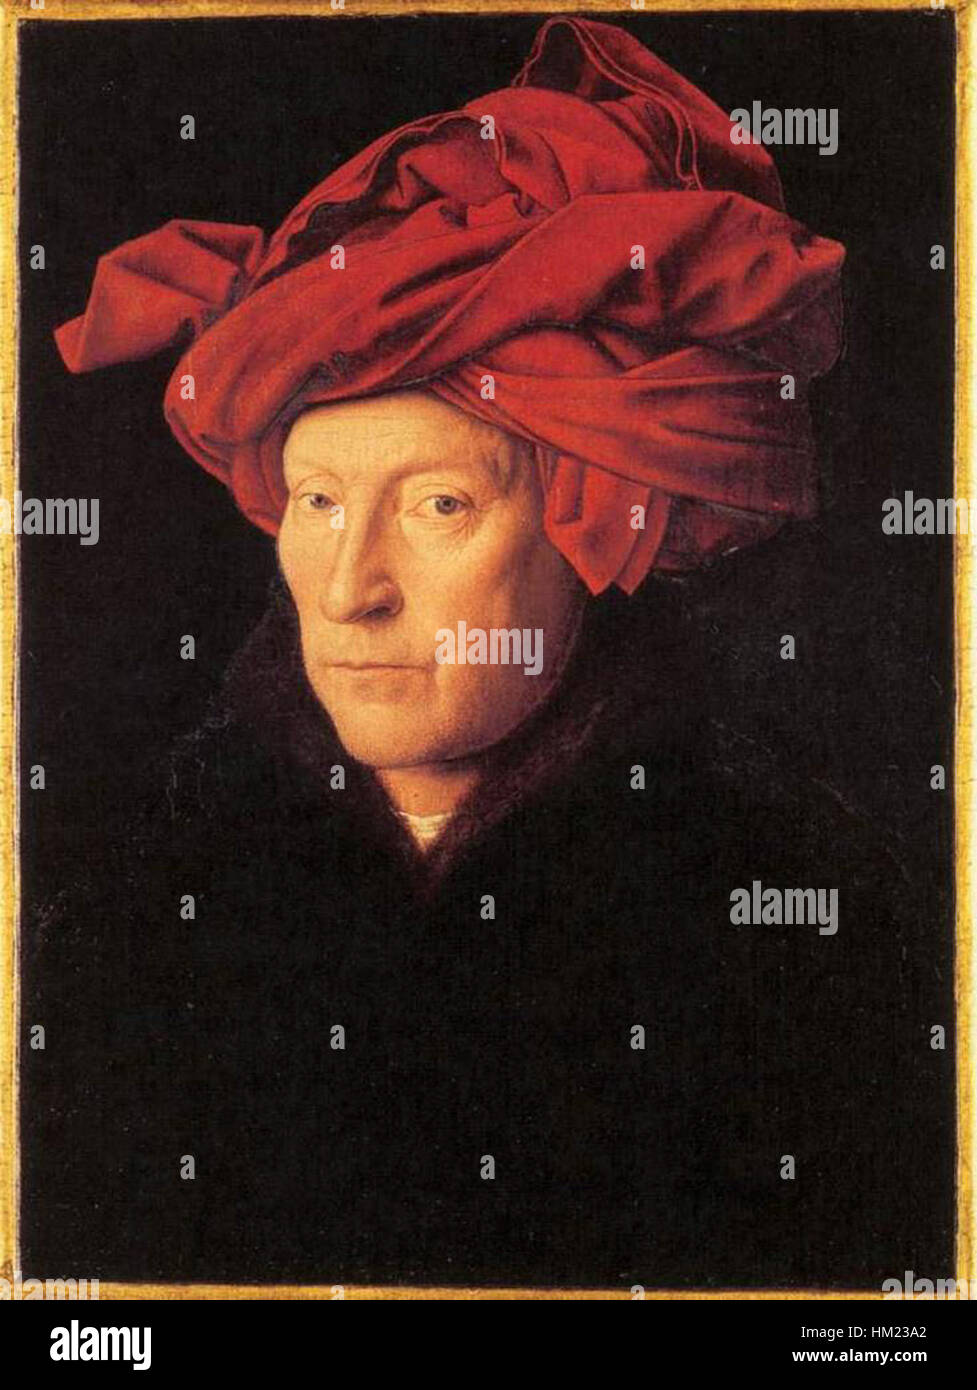 Jan van Eyck - Man in a Turban - WGA7597 Stock Photo - Alamy